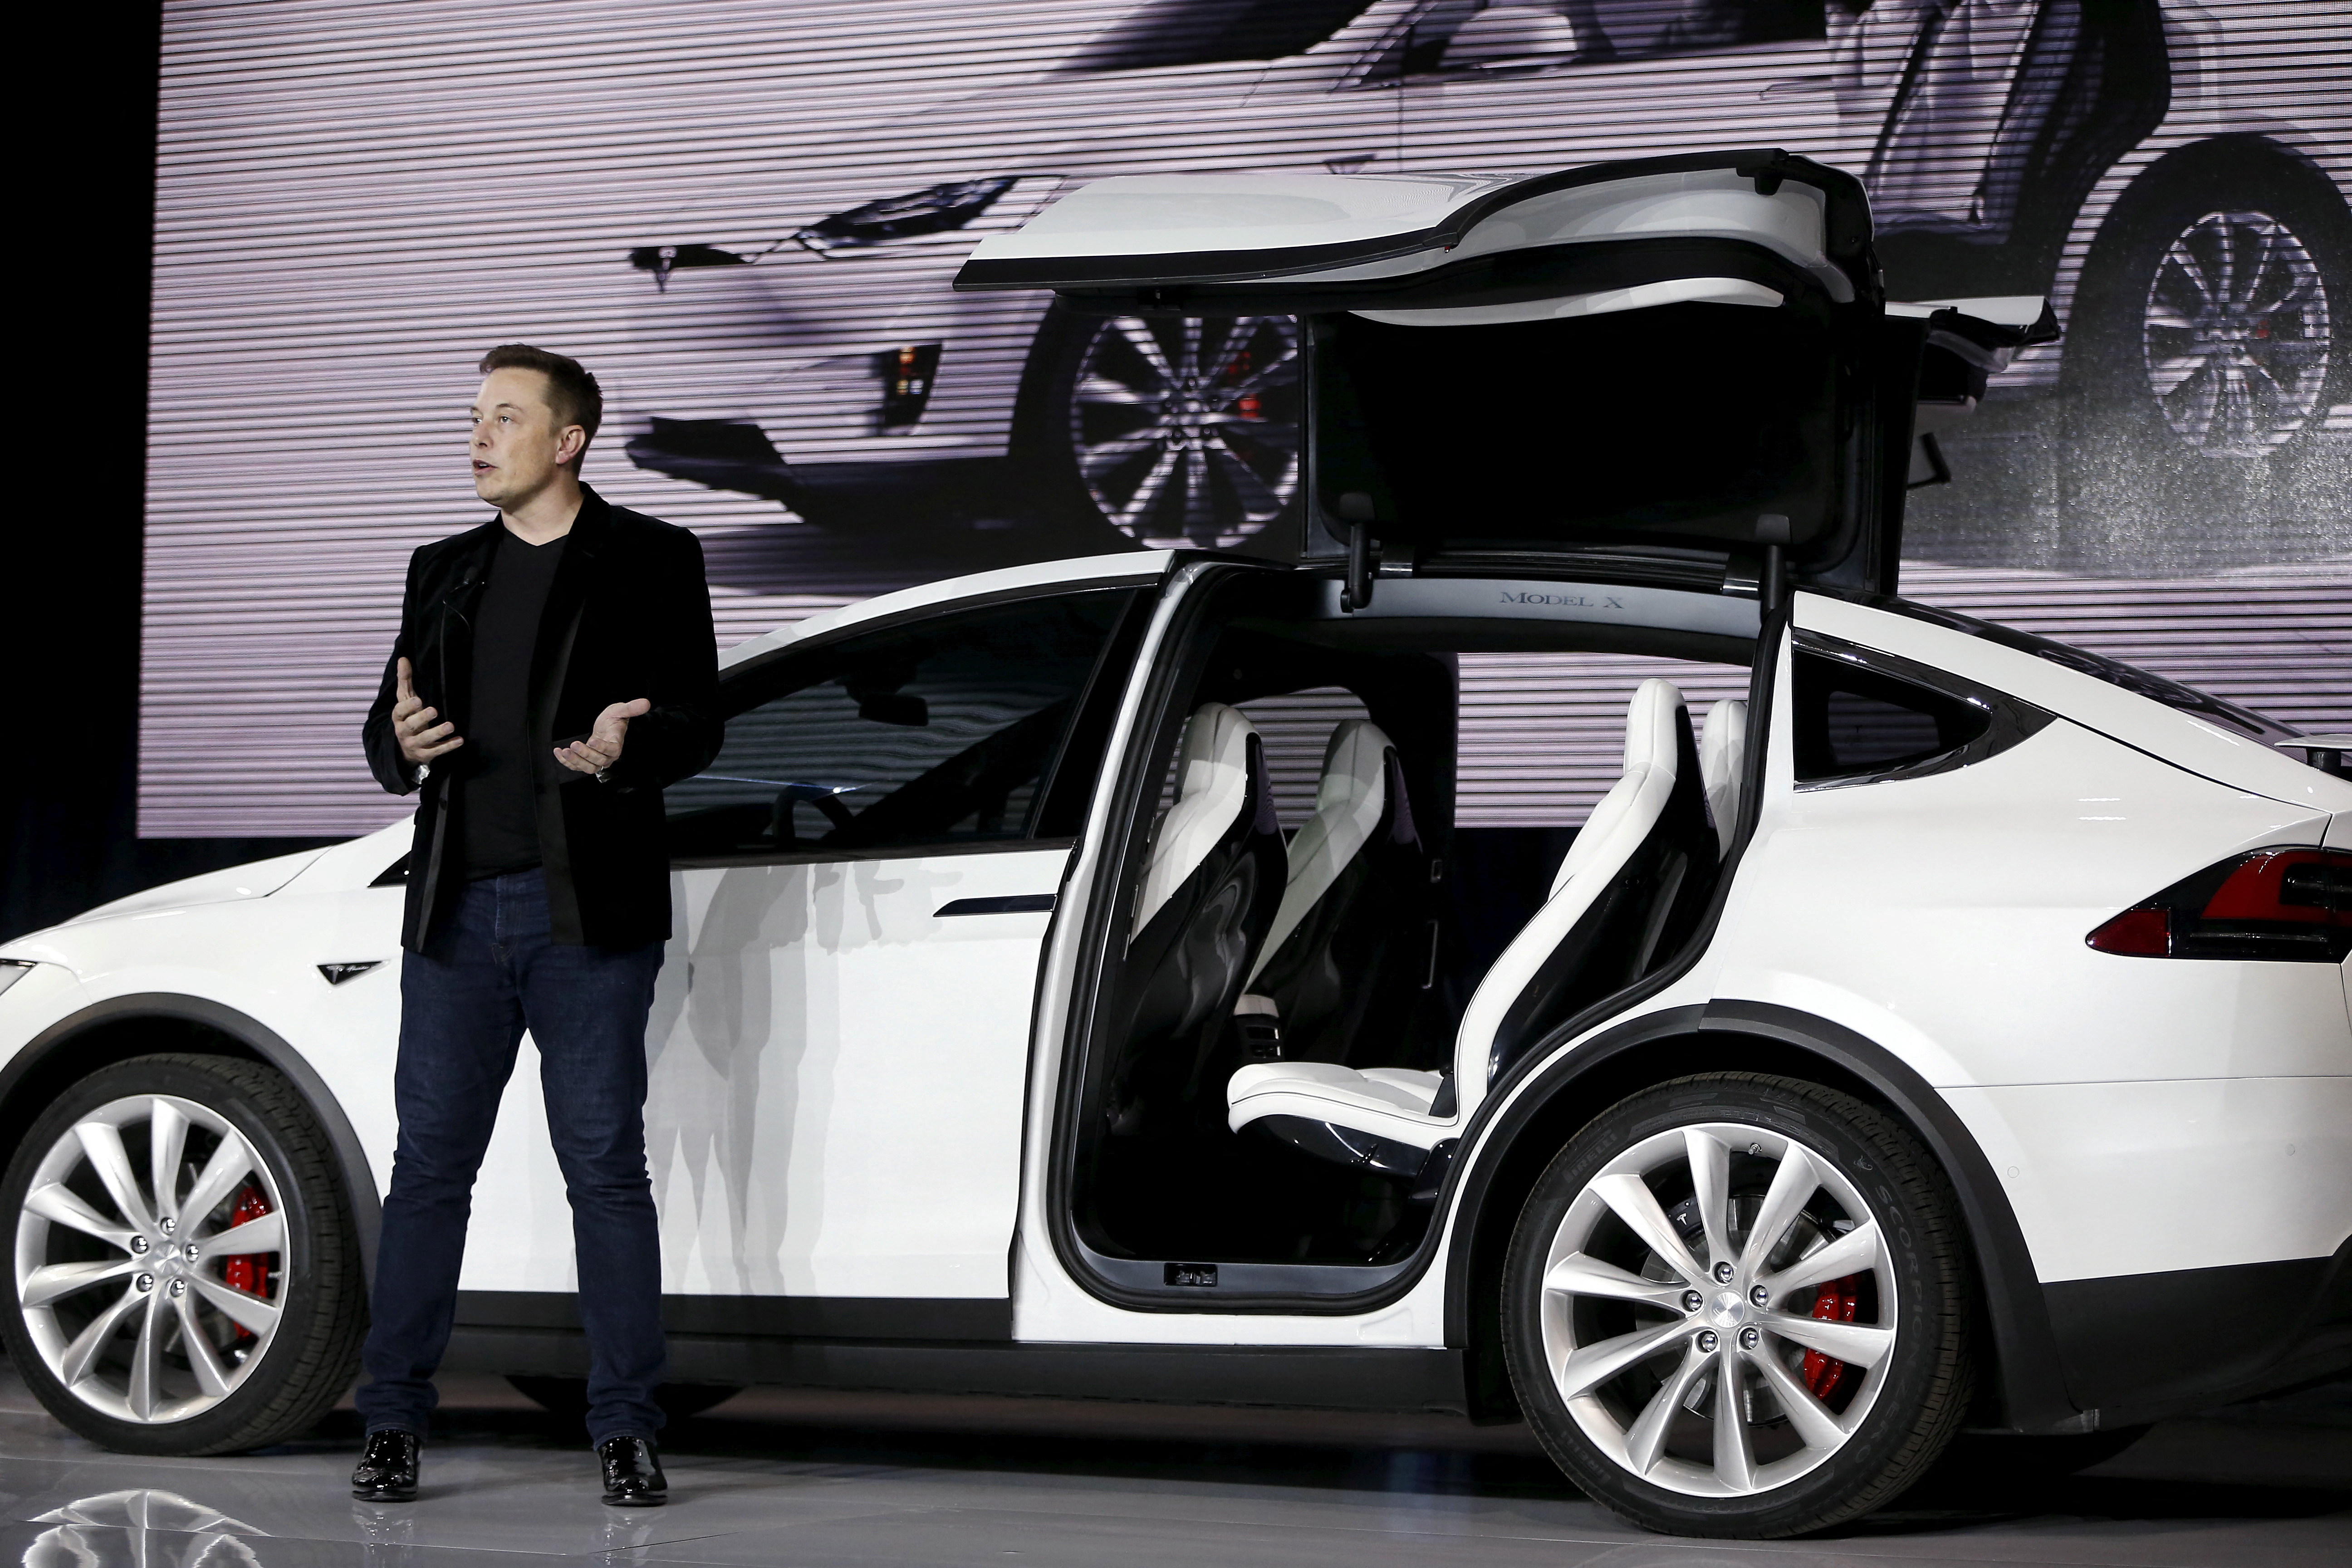 El CEO de Tesla Motors, Elon Musk, presentó los vehículos utilitarios deportivos eléctricos Model X en una presentación en Fremont, California.